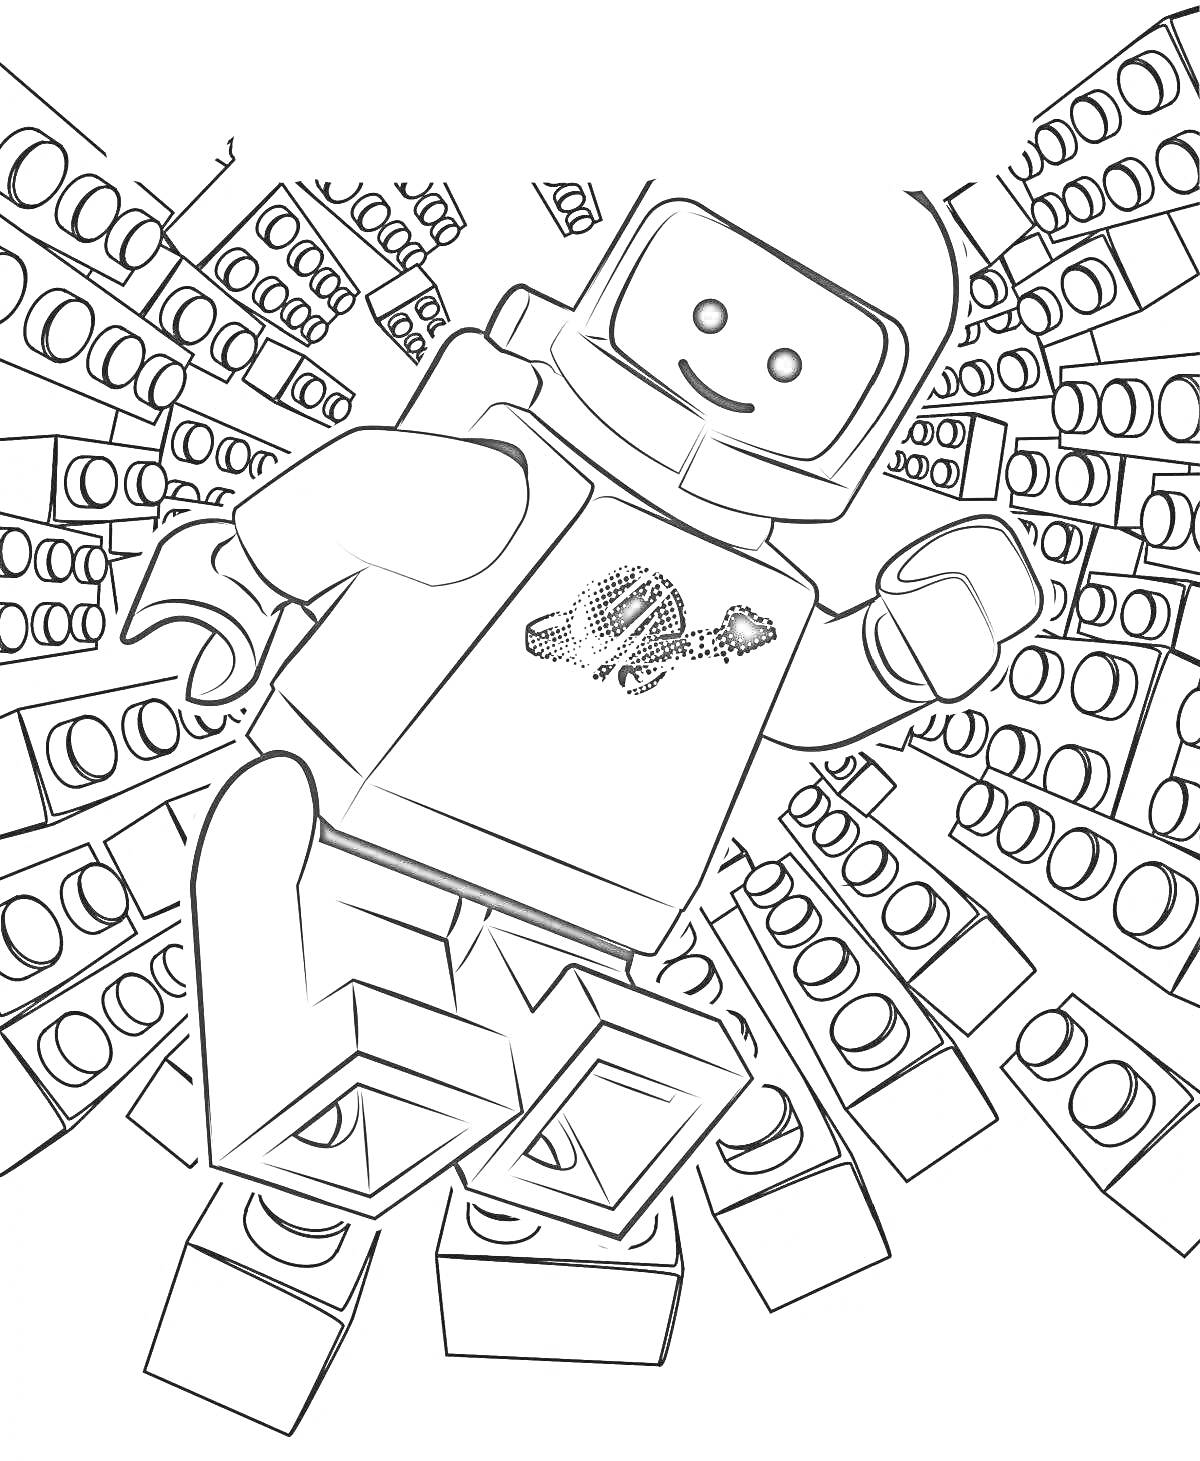 Раскраска Лего космонавт на фоне лего блоков